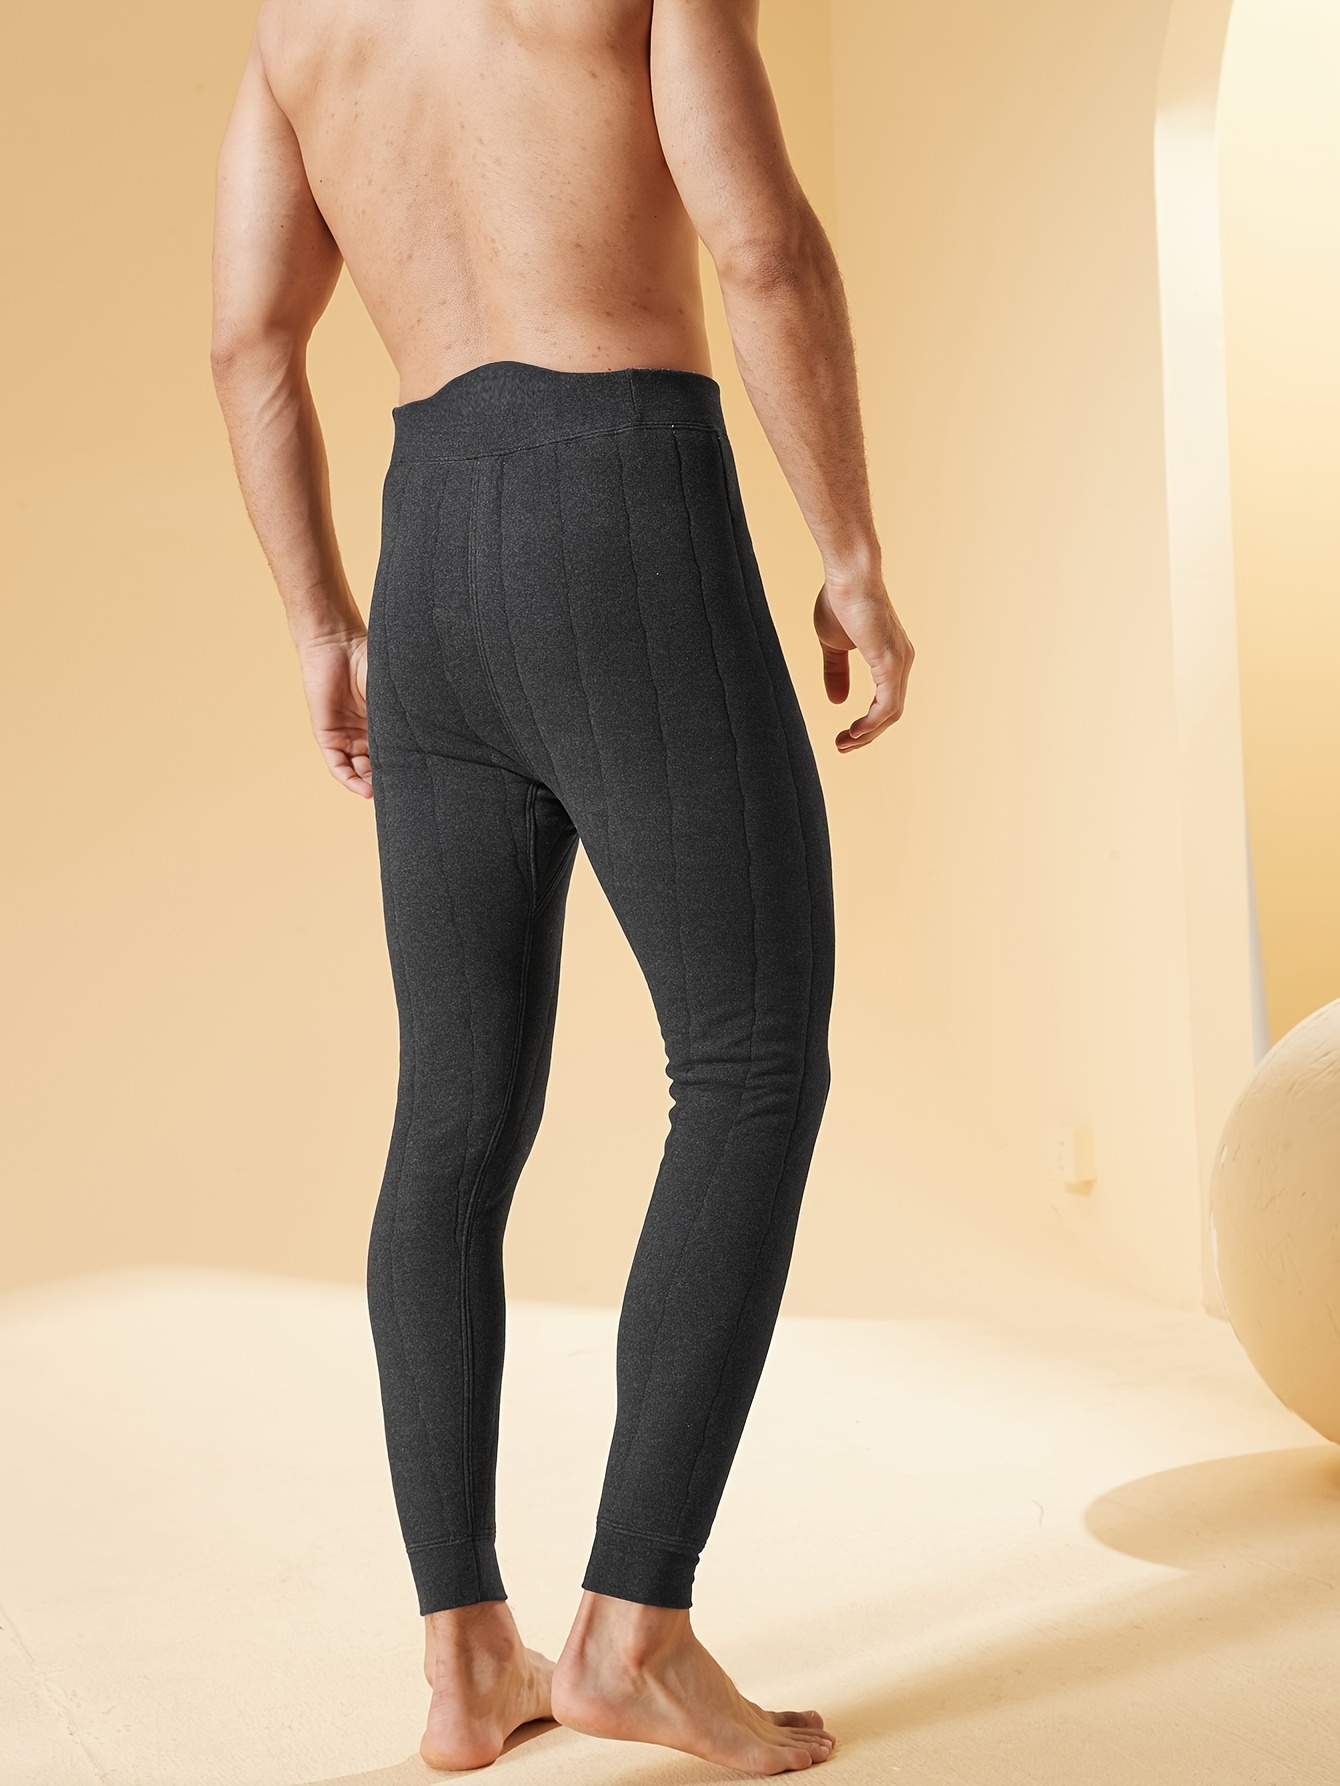 Pantalones Térmicos Para Hombre De Otoño/invierno De Modal Elástica Y  Cálido, Ajustado Al Cuerpo, Mode de Mujer